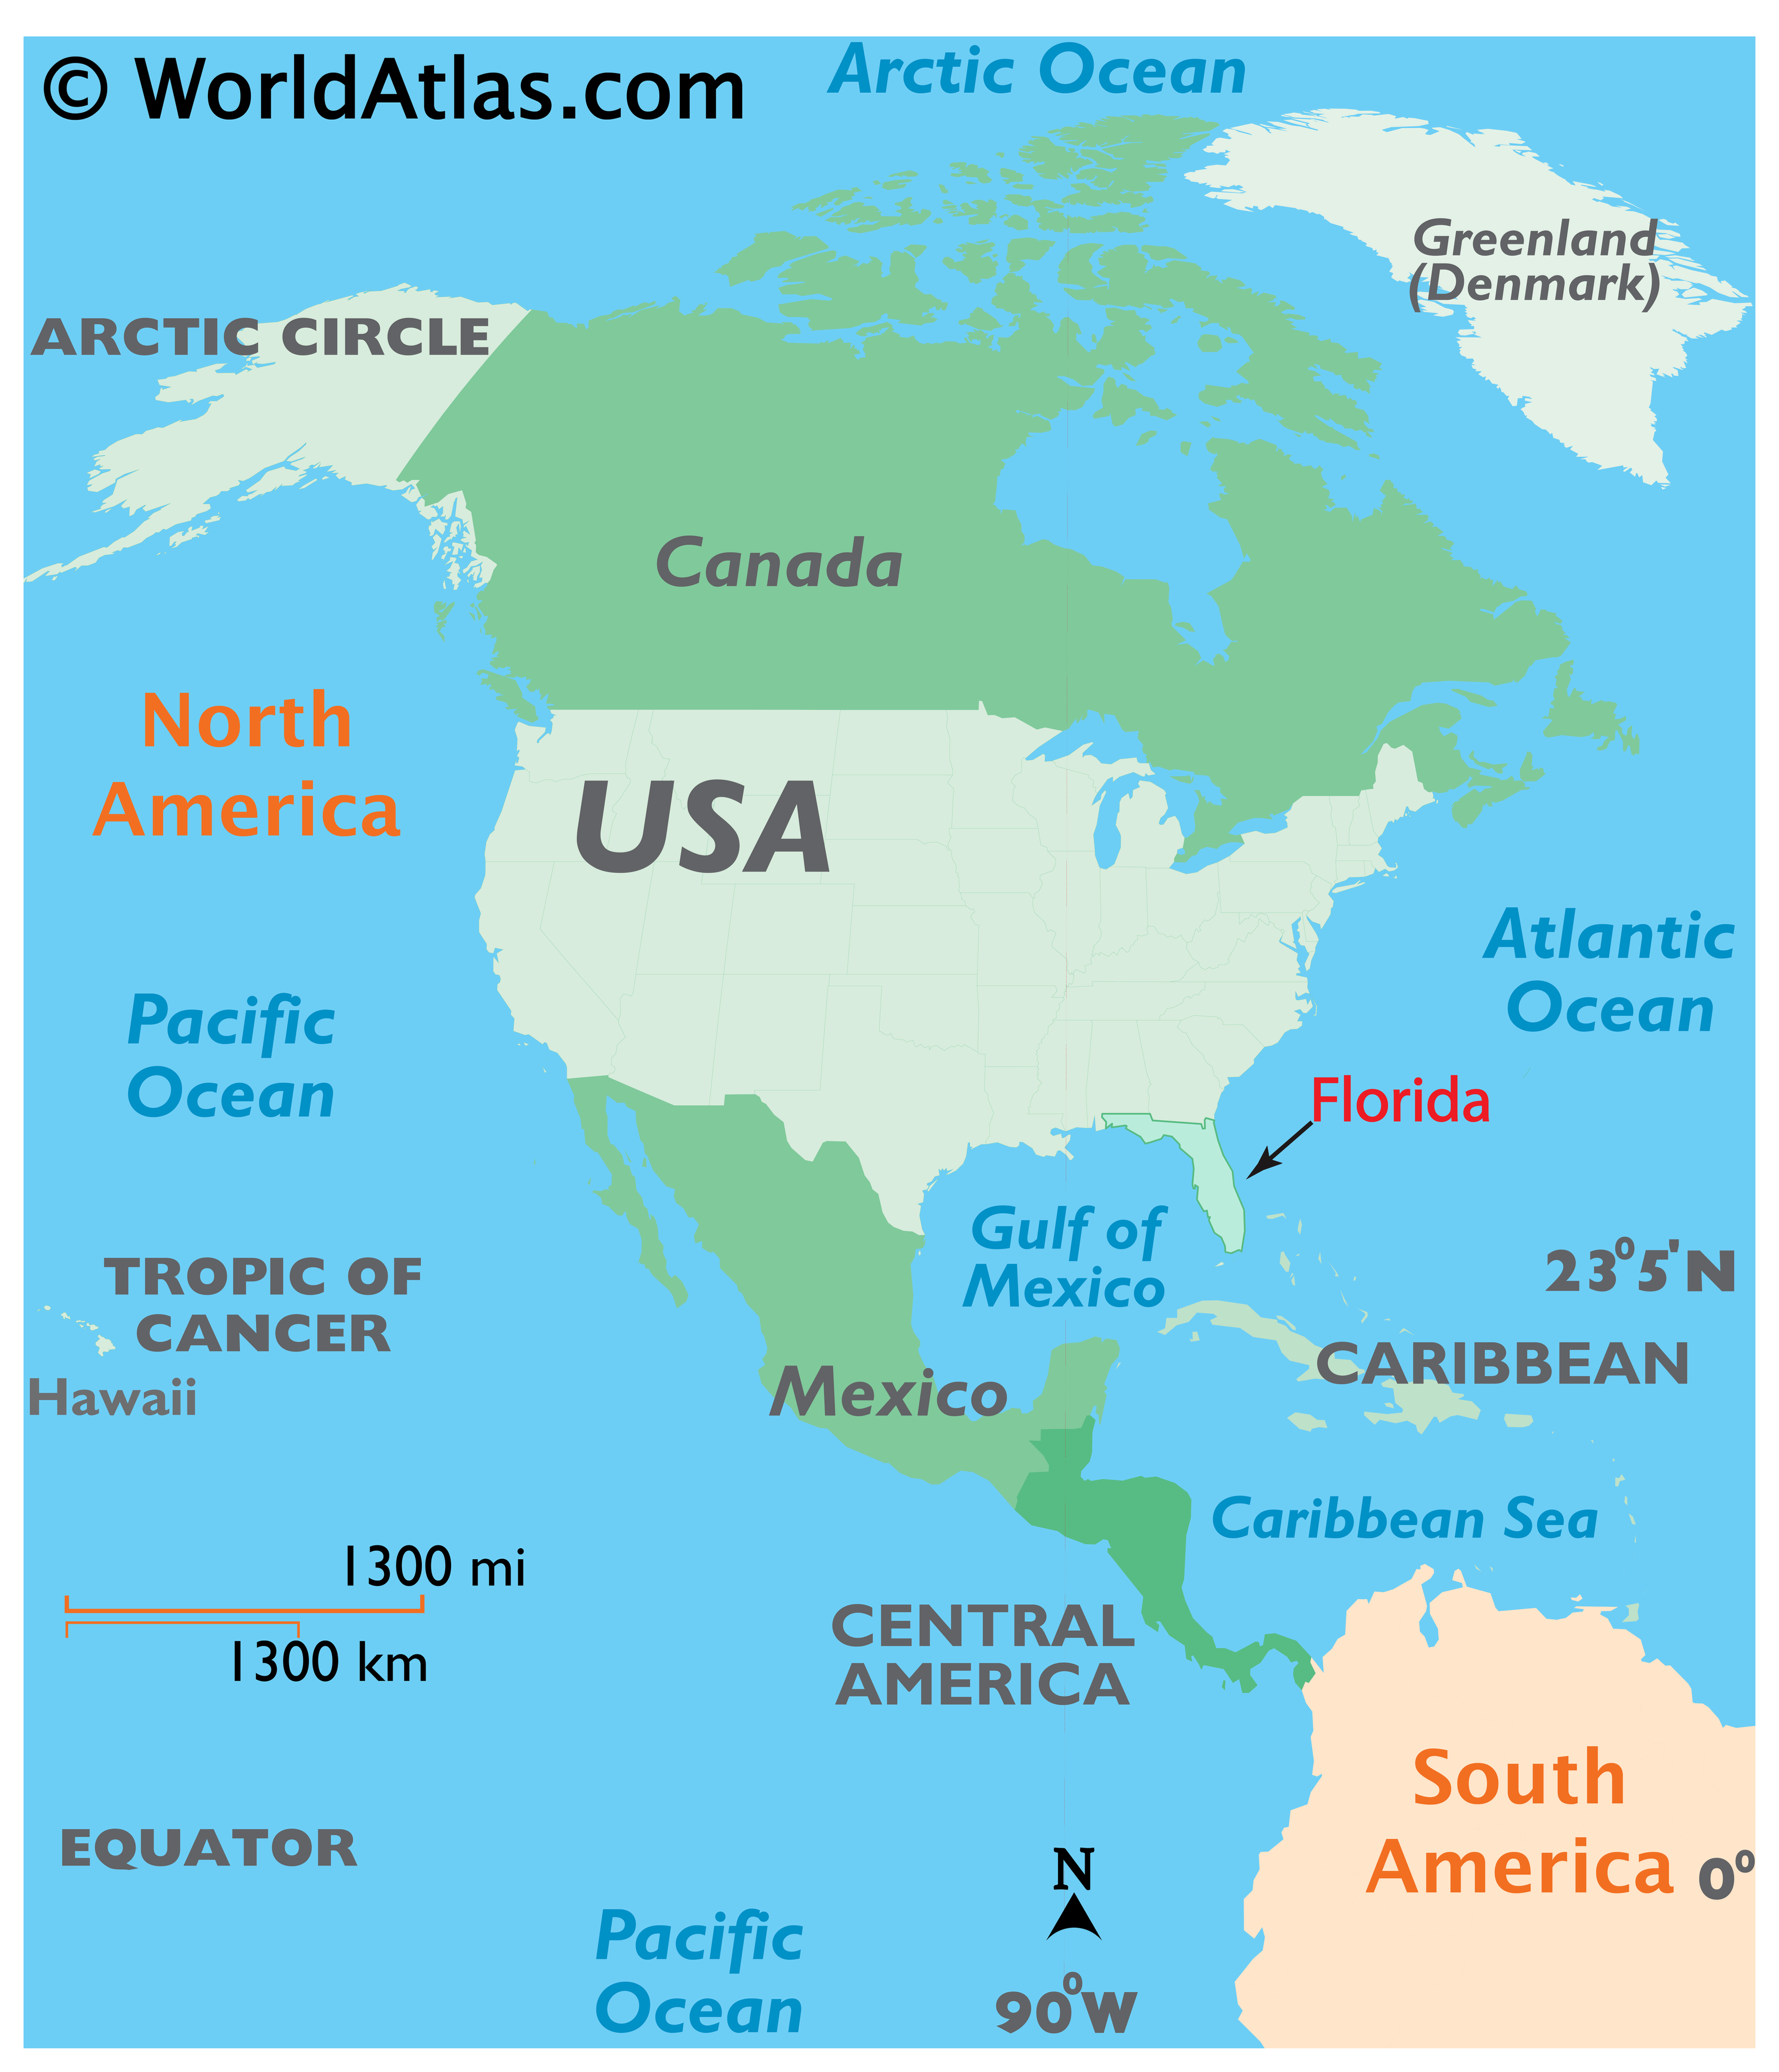 karta florida amerika Florida Map / Geography of Florida/ Map of Florida   Worldatlas.com karta florida amerika